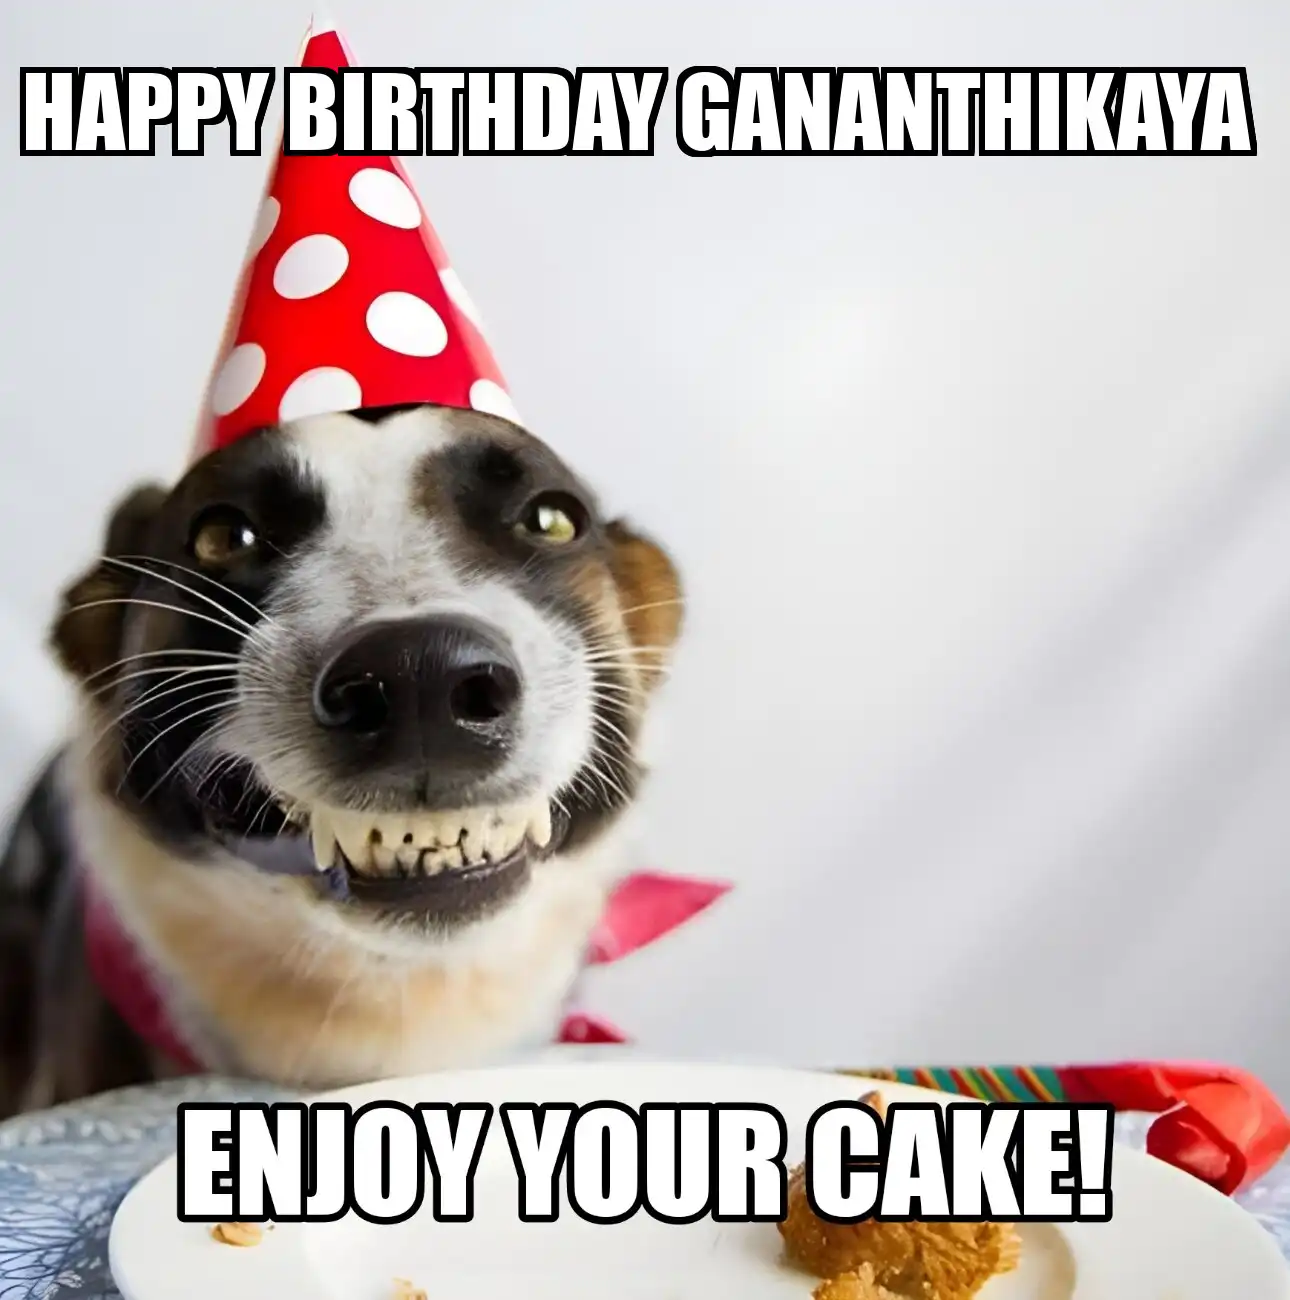 Happy Birthday Gananthikaya Enjoy Your Cake Dog Meme